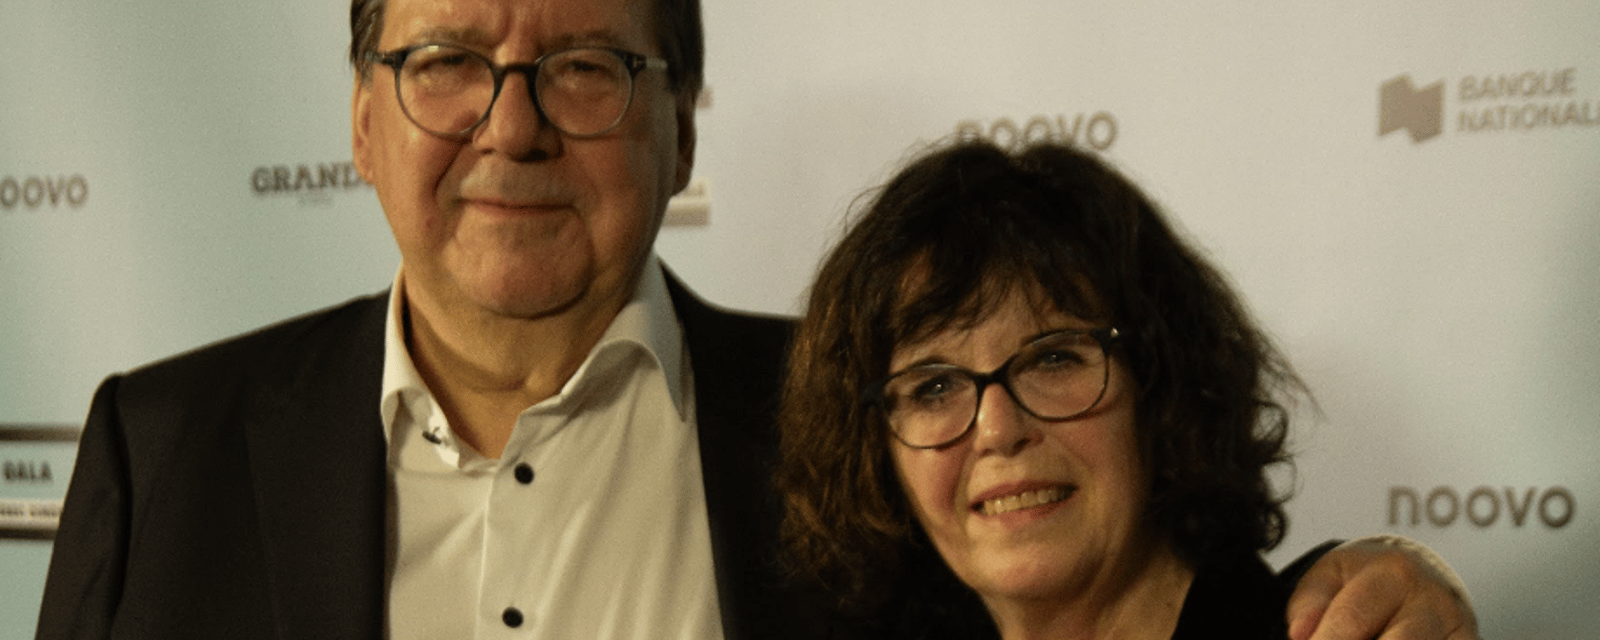 Le Gala Cinéma Québec rend un hommage hallucinant à Rémy Girard et il reçoit une superbe ovation